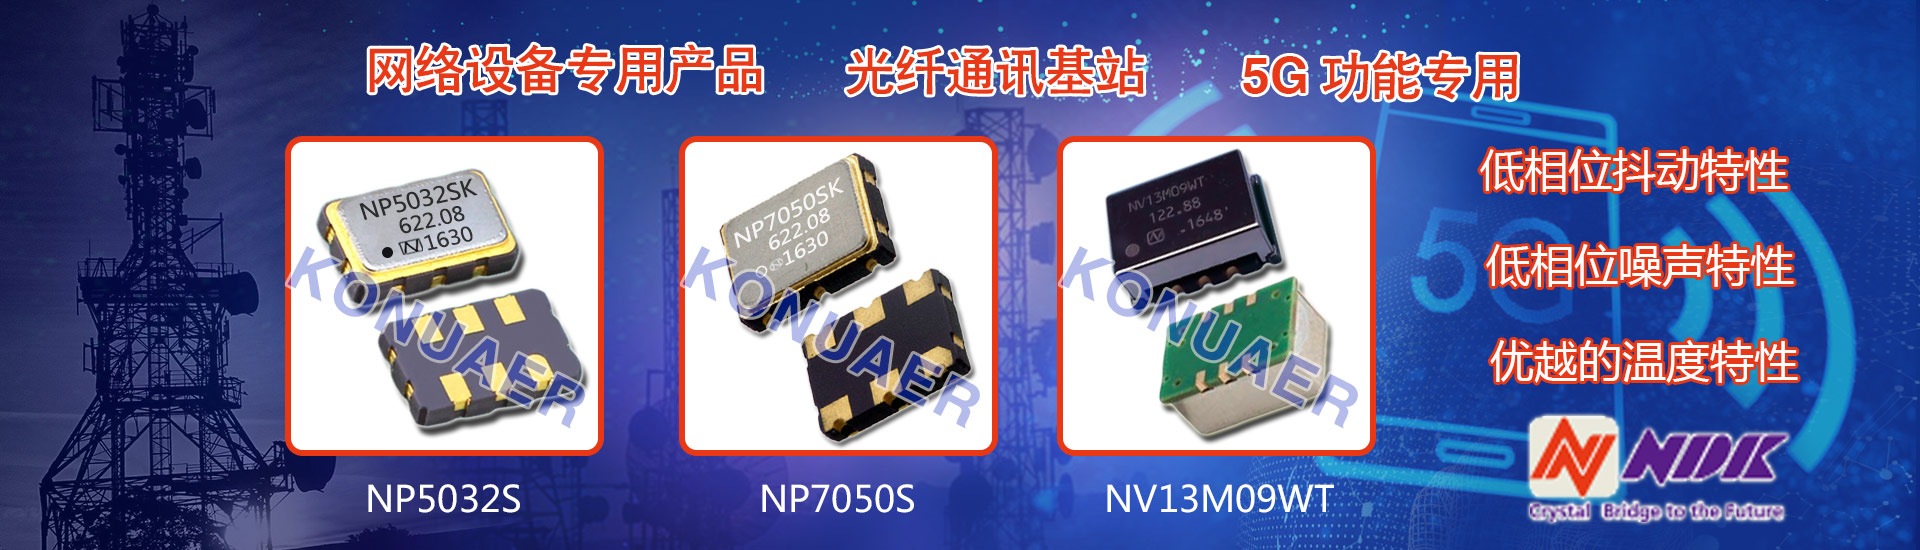 NDK石英晶体振荡器低功耗,性能高,被广泛用于网络设备,光纤通信等领域